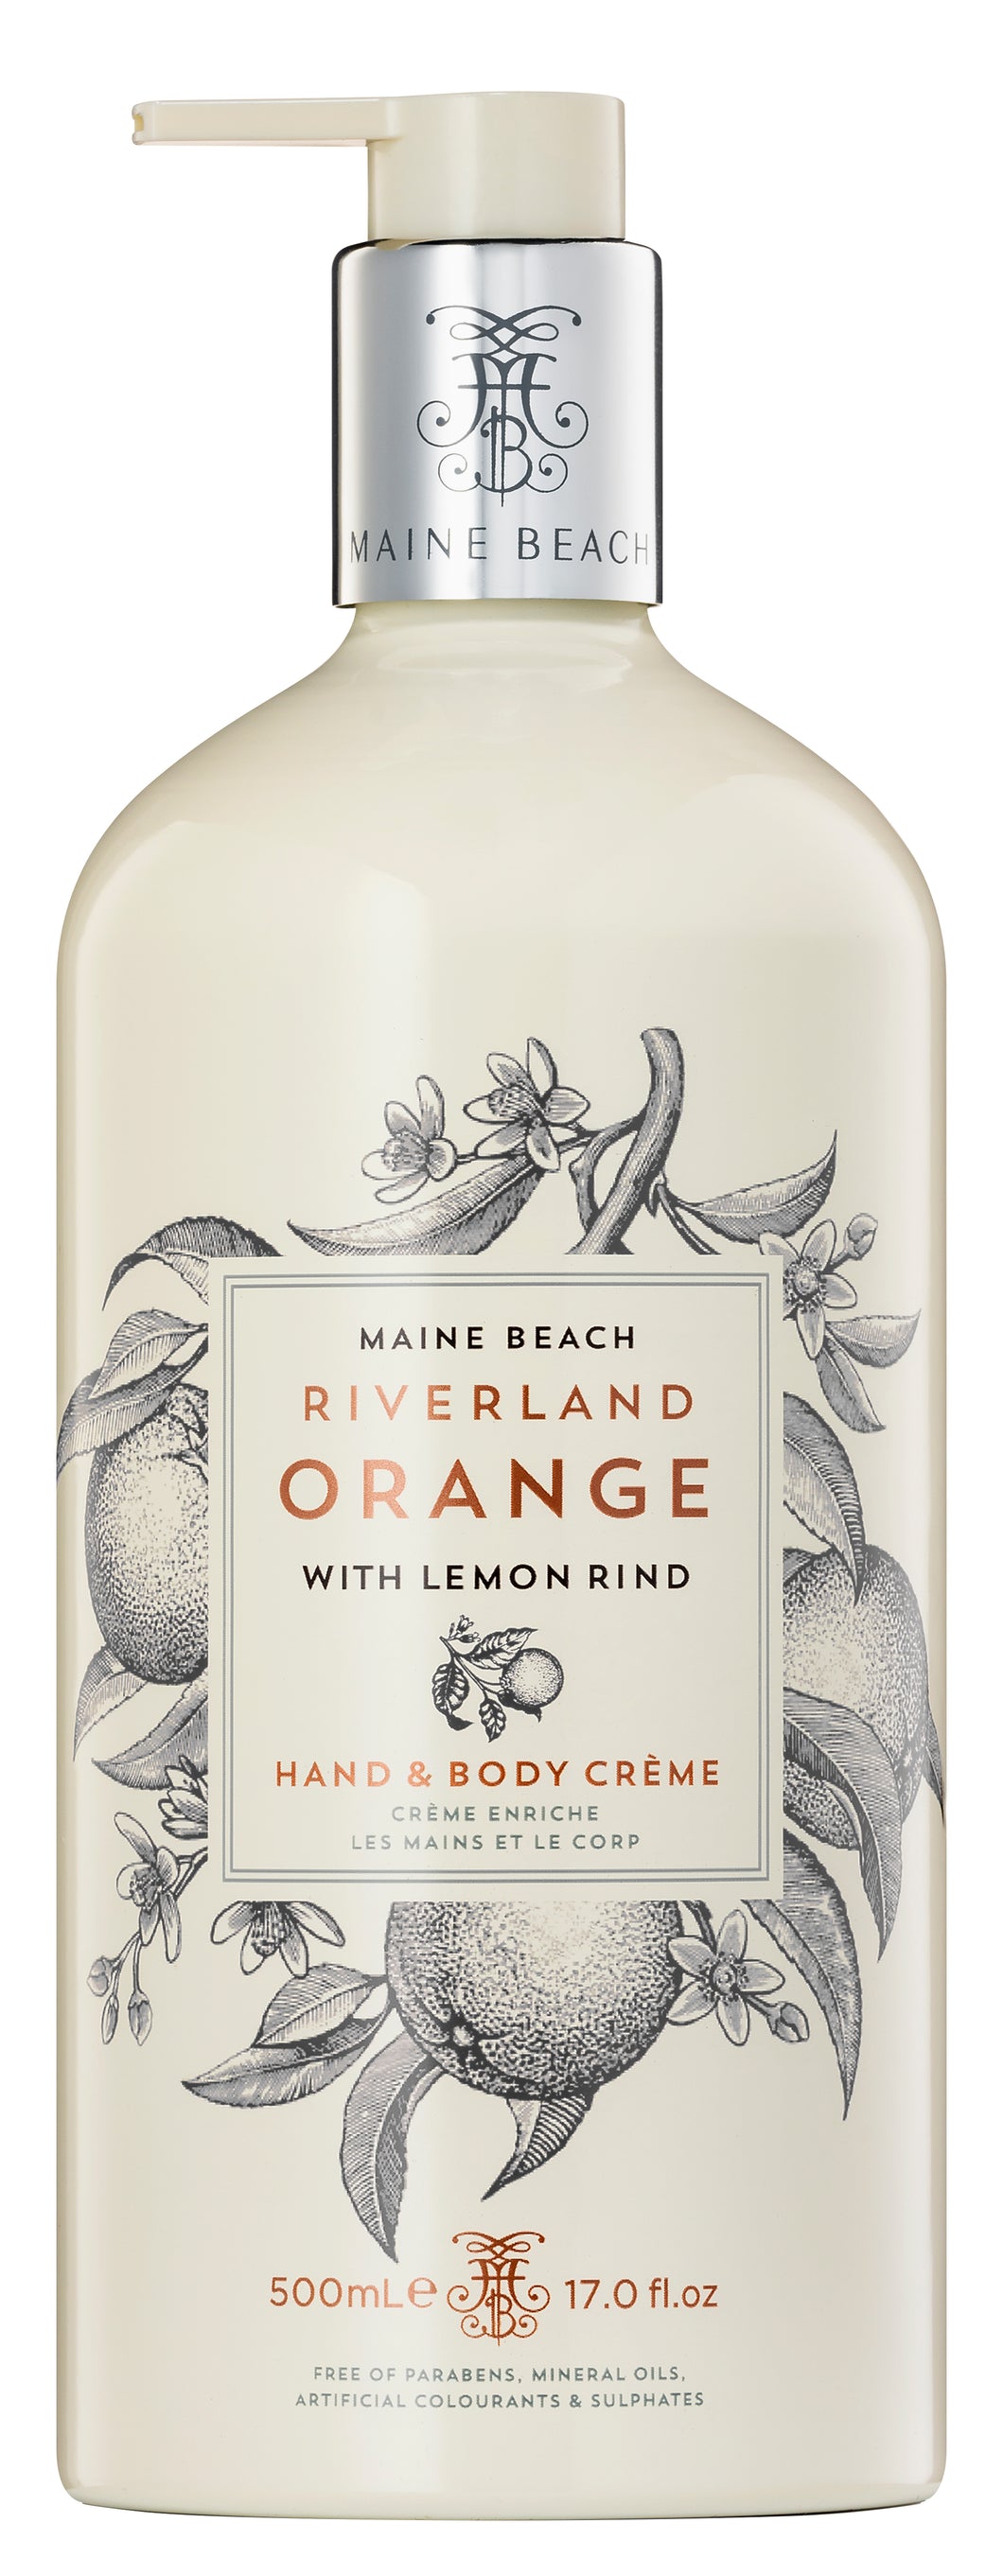 Maine Beach Riverland Orange Hand & Body Creme 500ml